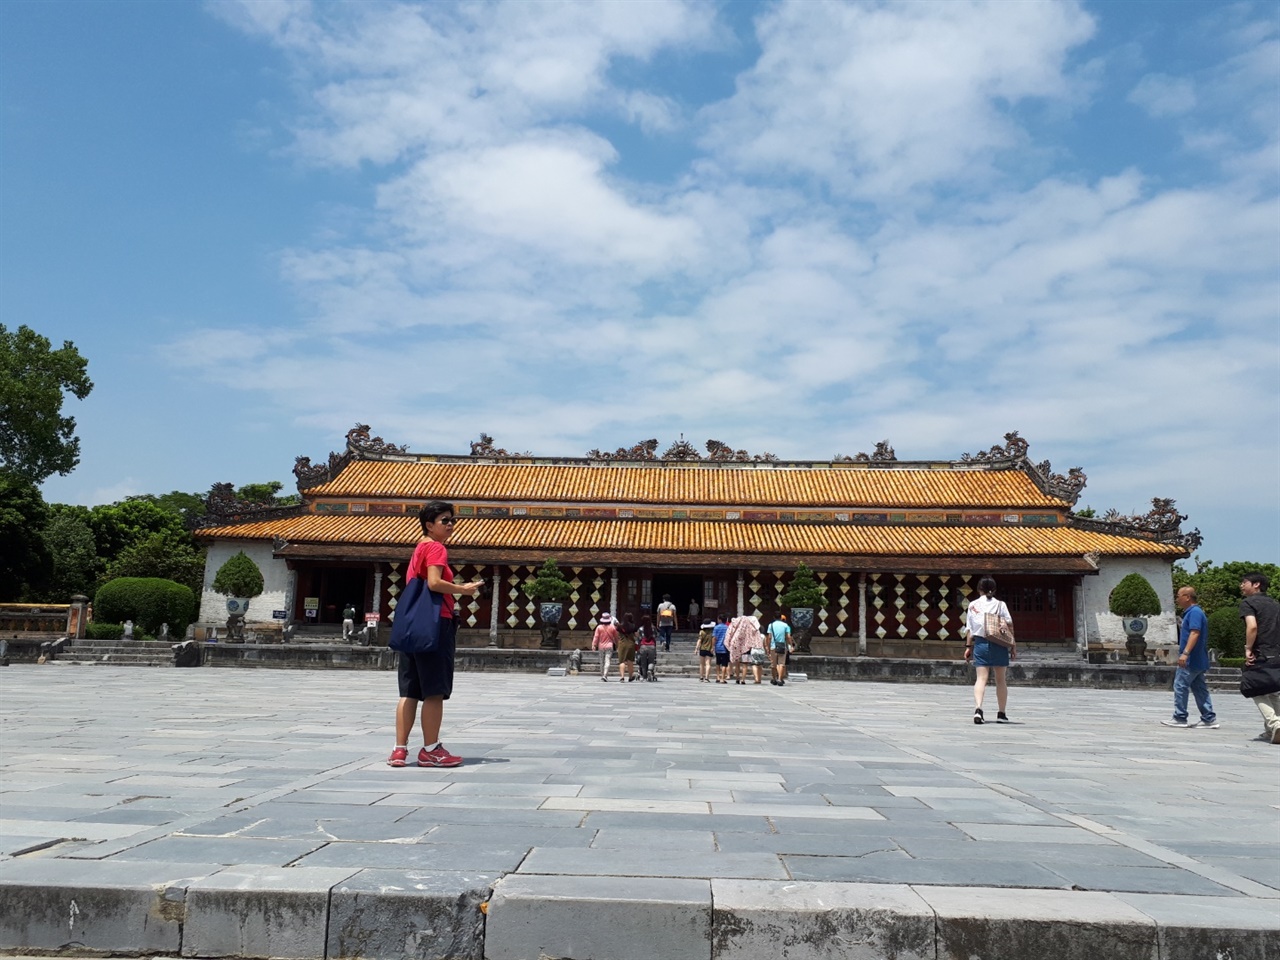 베트남 황궁의 정전인 태화전은 중국 자금성의 정전과 이름이 같다. 베트남 기후의 특성으로 인해 건물이 낮지만 내부는 생각보다 넓다.